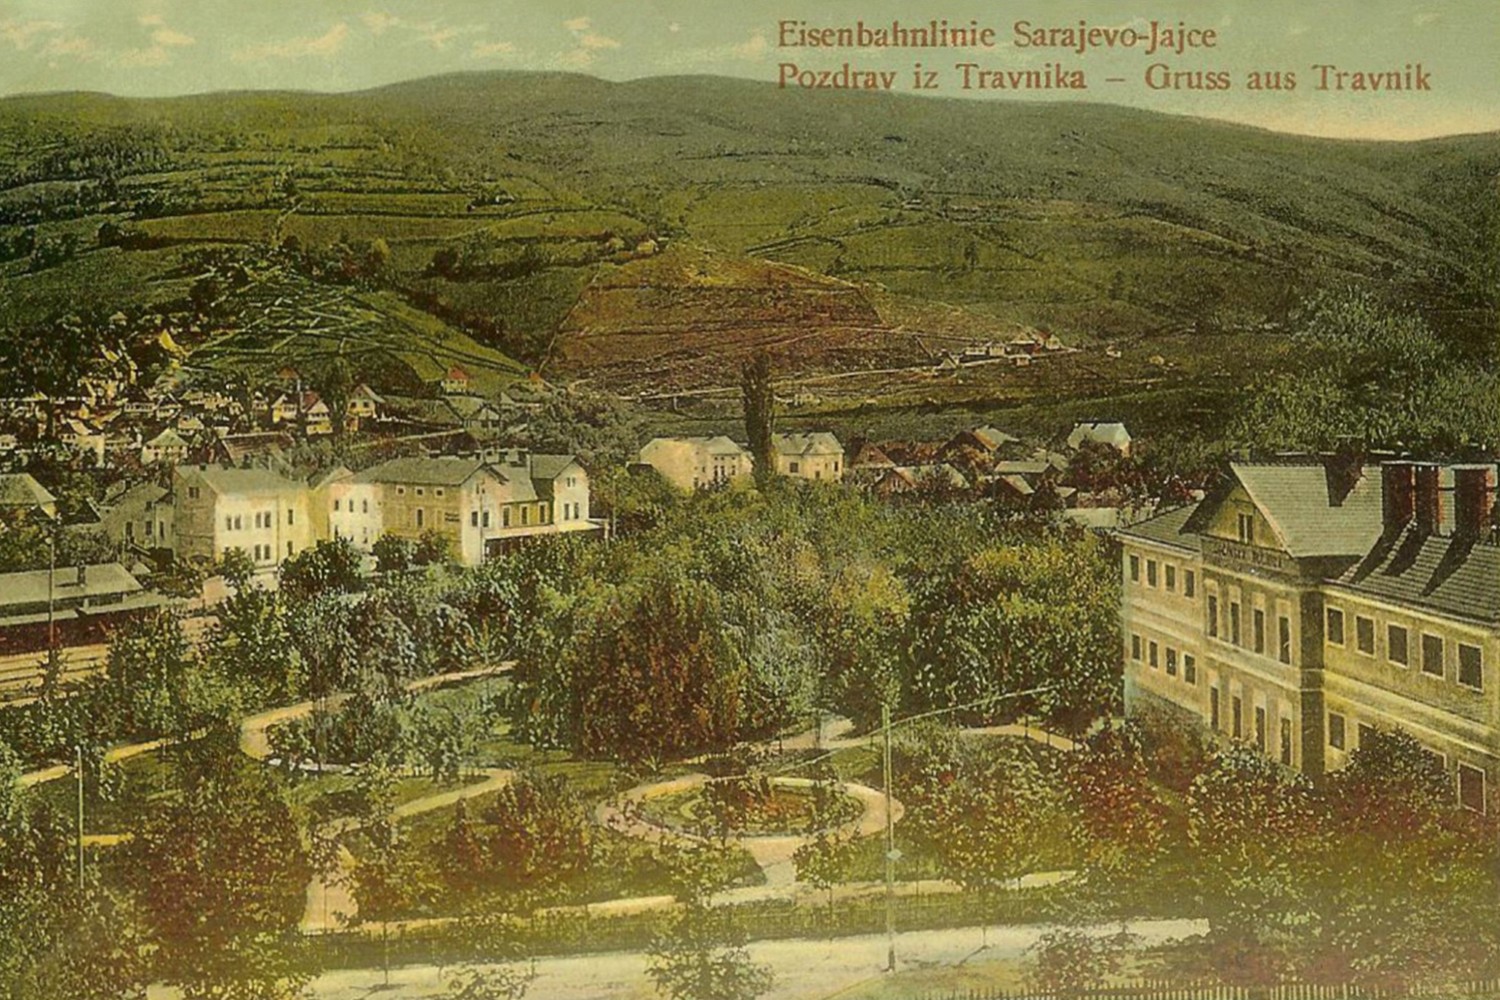 Razglednica iz Travnika oko 1910. godine (Foto: Wikimedia)